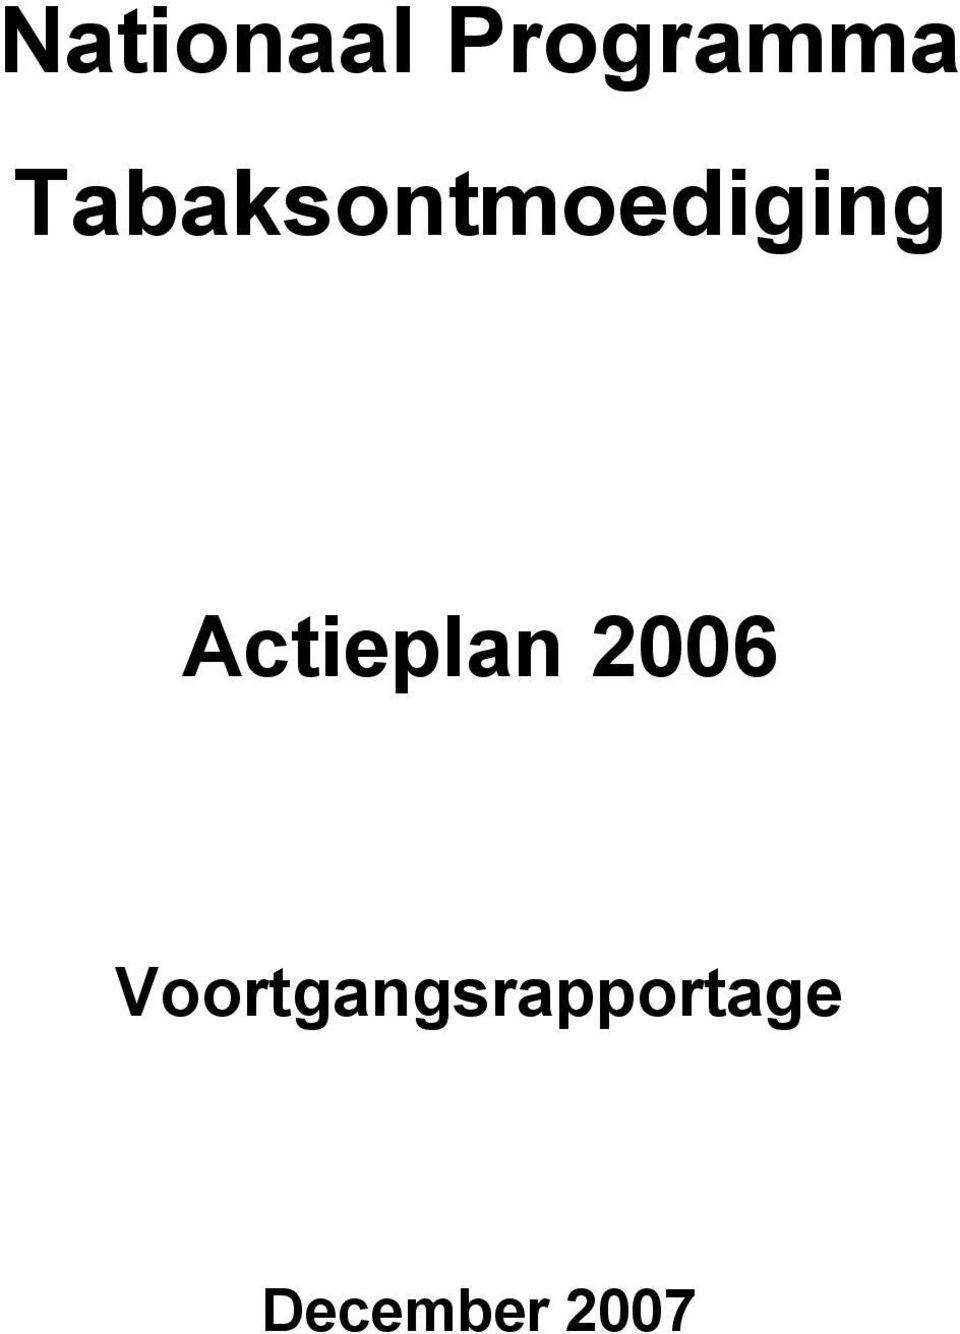 Actieplan 2006